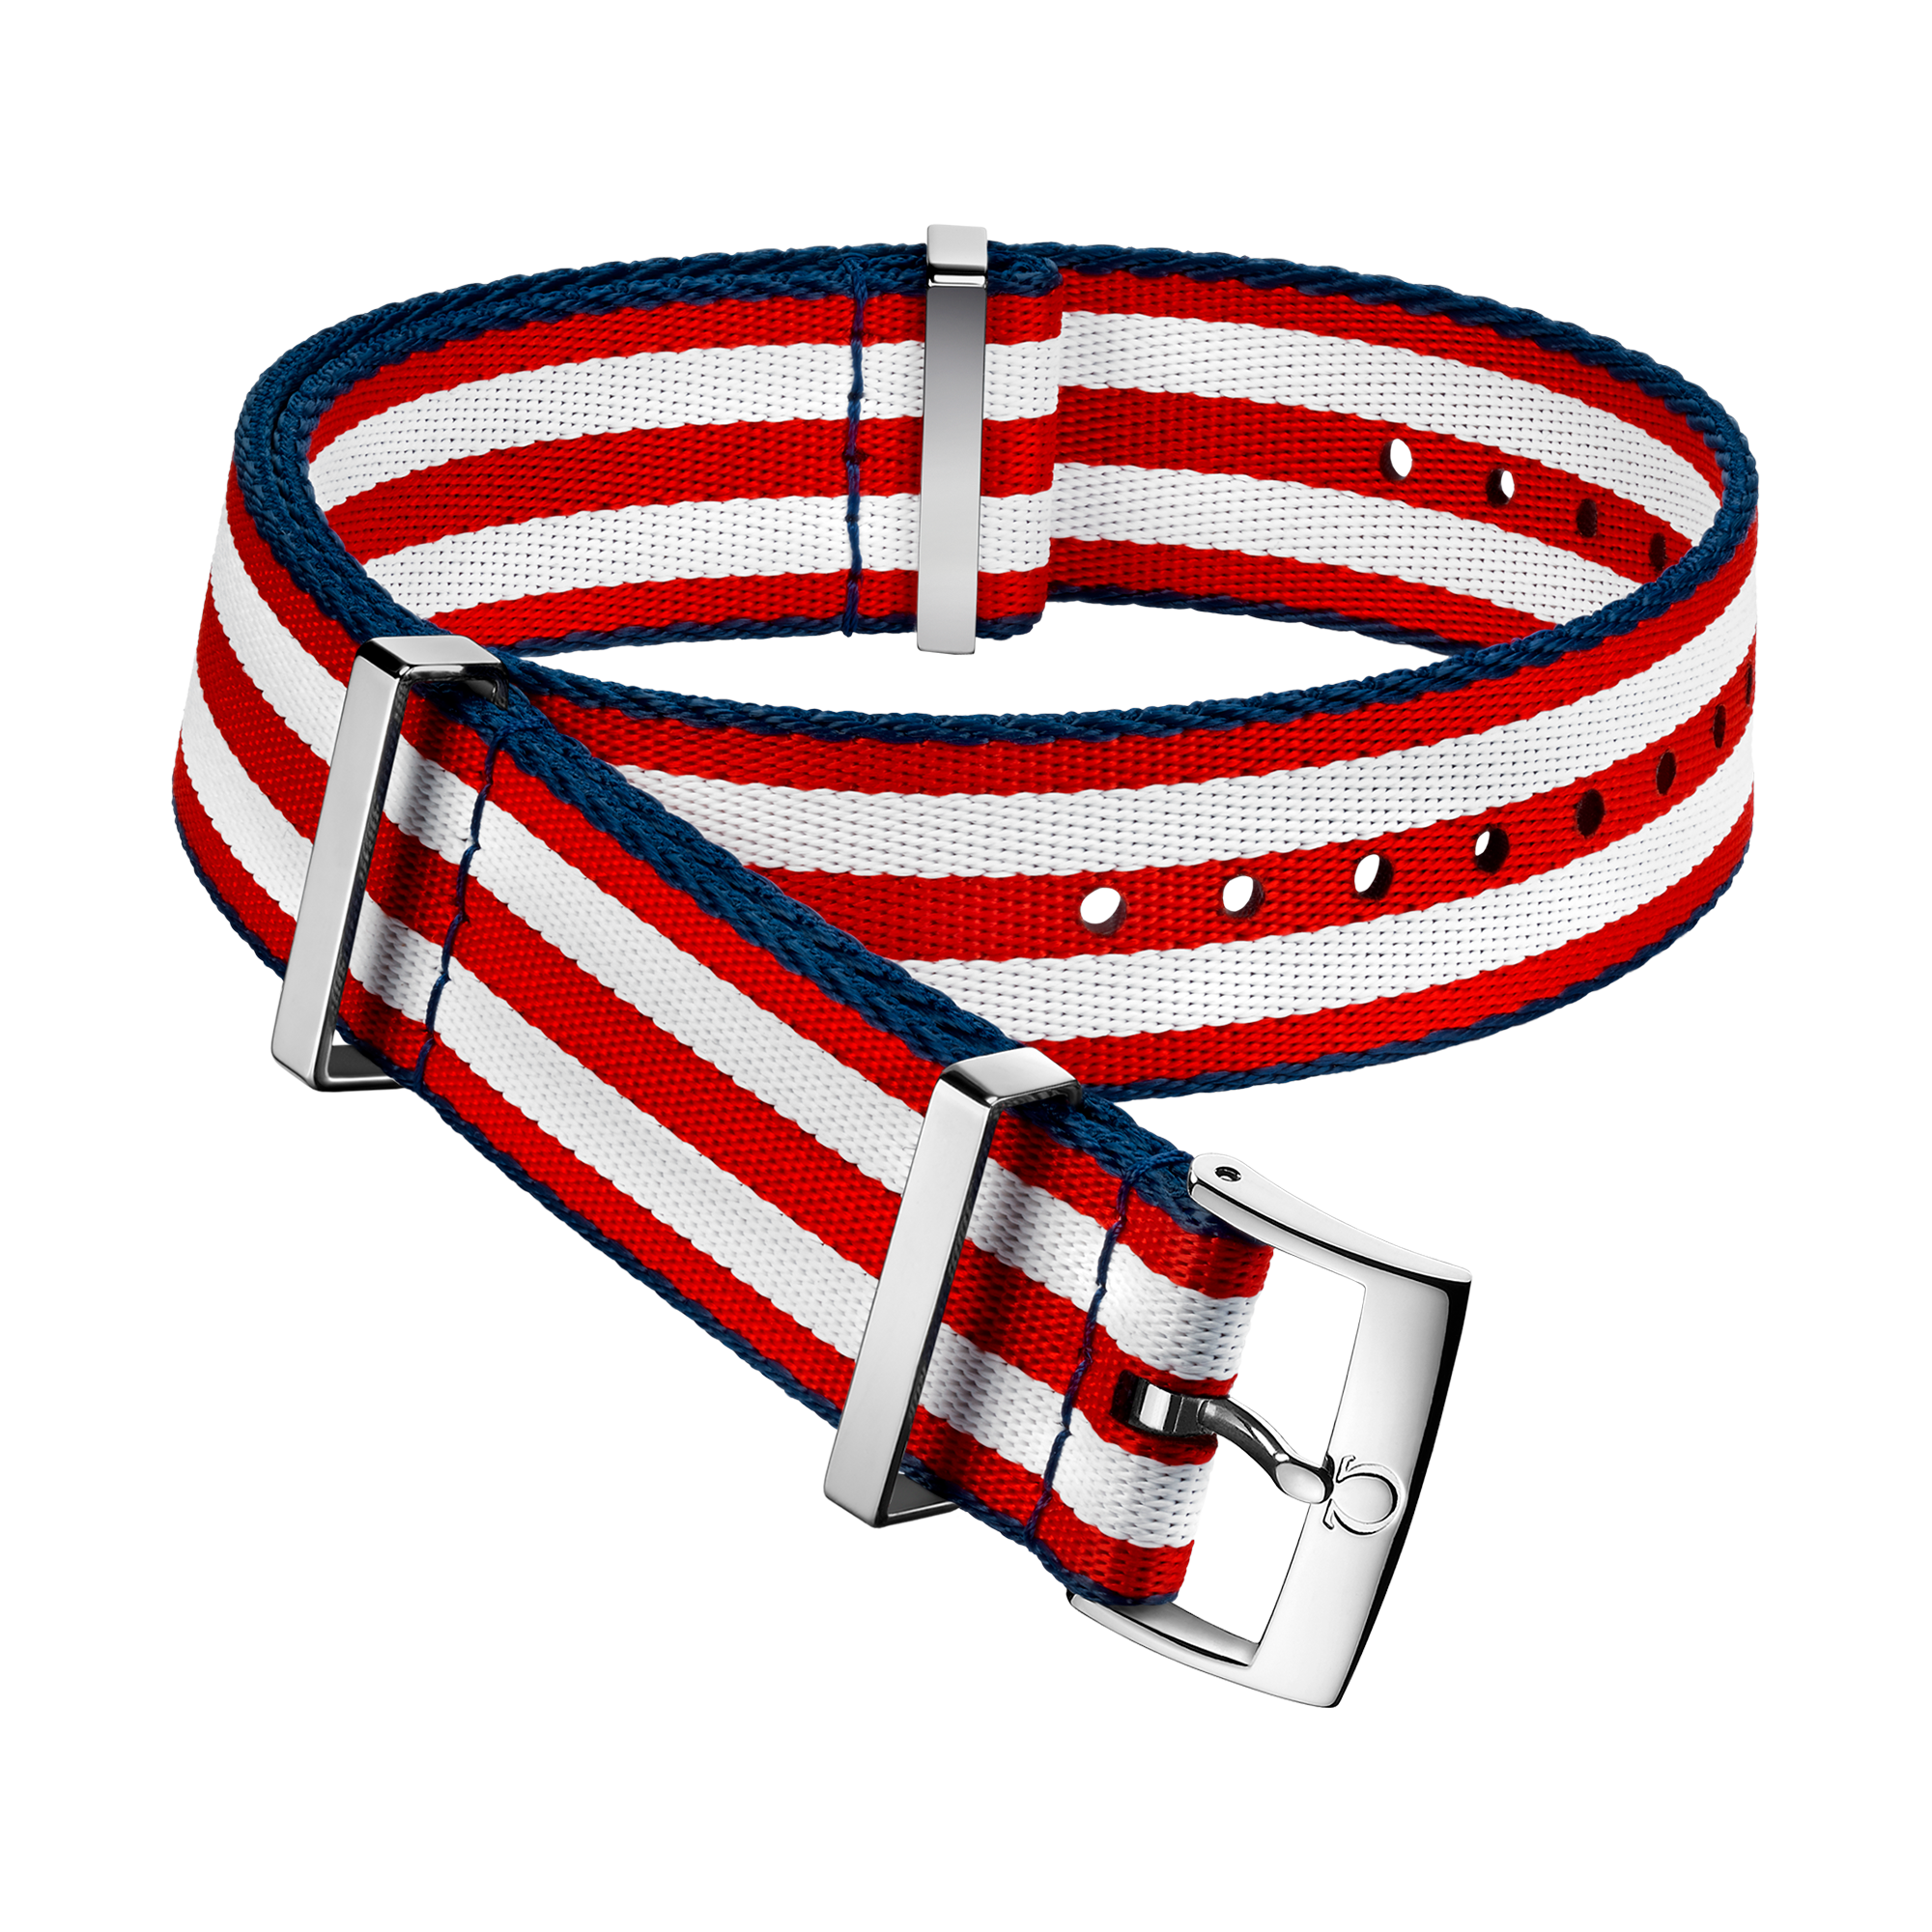 Bracelet NATO - Bracelet en polyamide rouge et blanc à 5 rayures et aux bordures bleues - 031CWZ010616